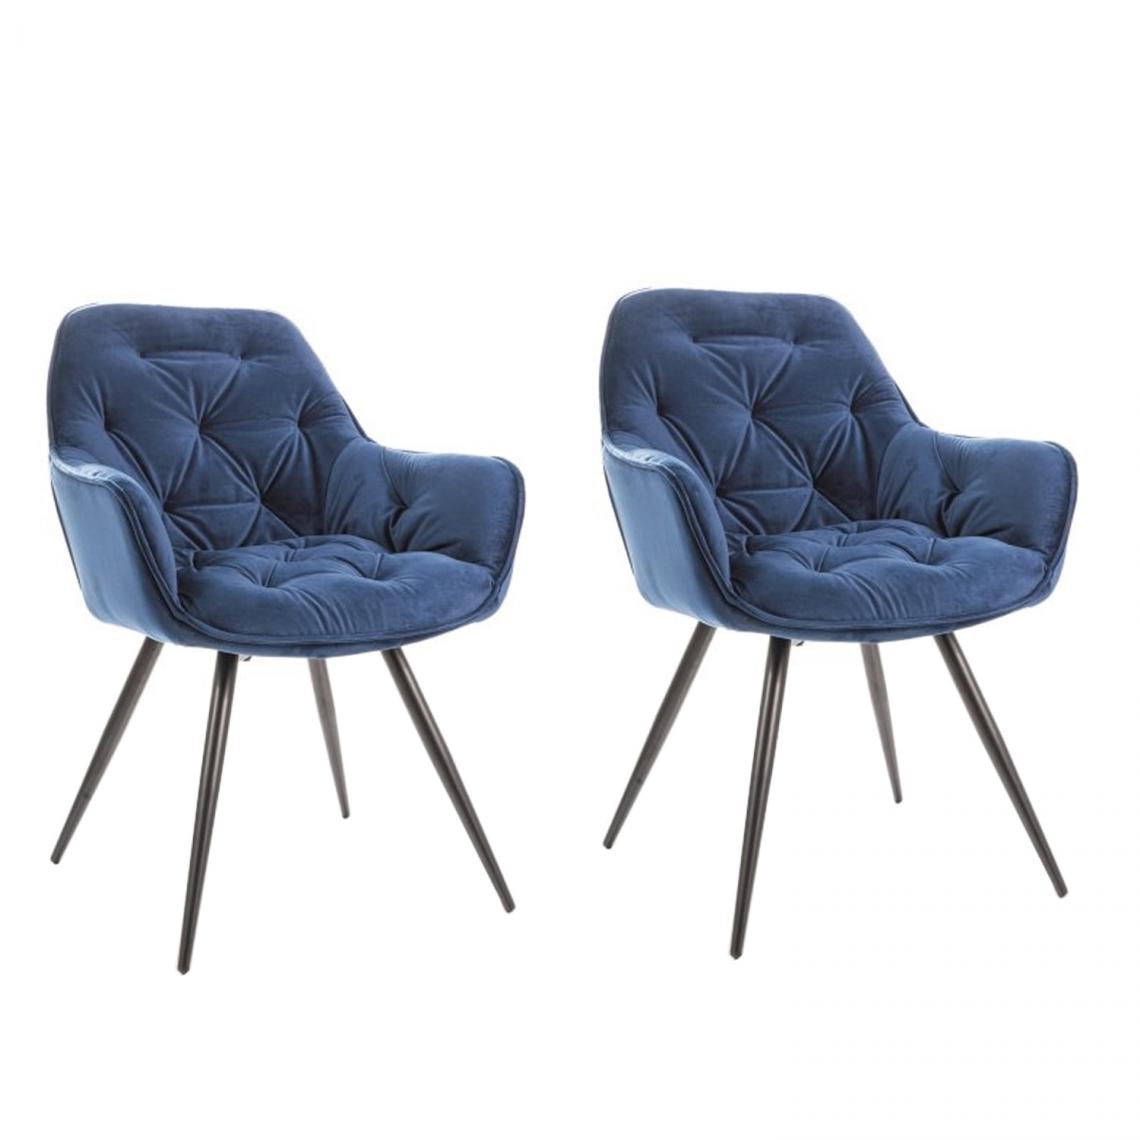 Hucoco - CHERLY - Lot de 2 chaises avec accoudoirs style glamour - 83x45x44cm - Velours + Pieds en métal - Blue - Chaises